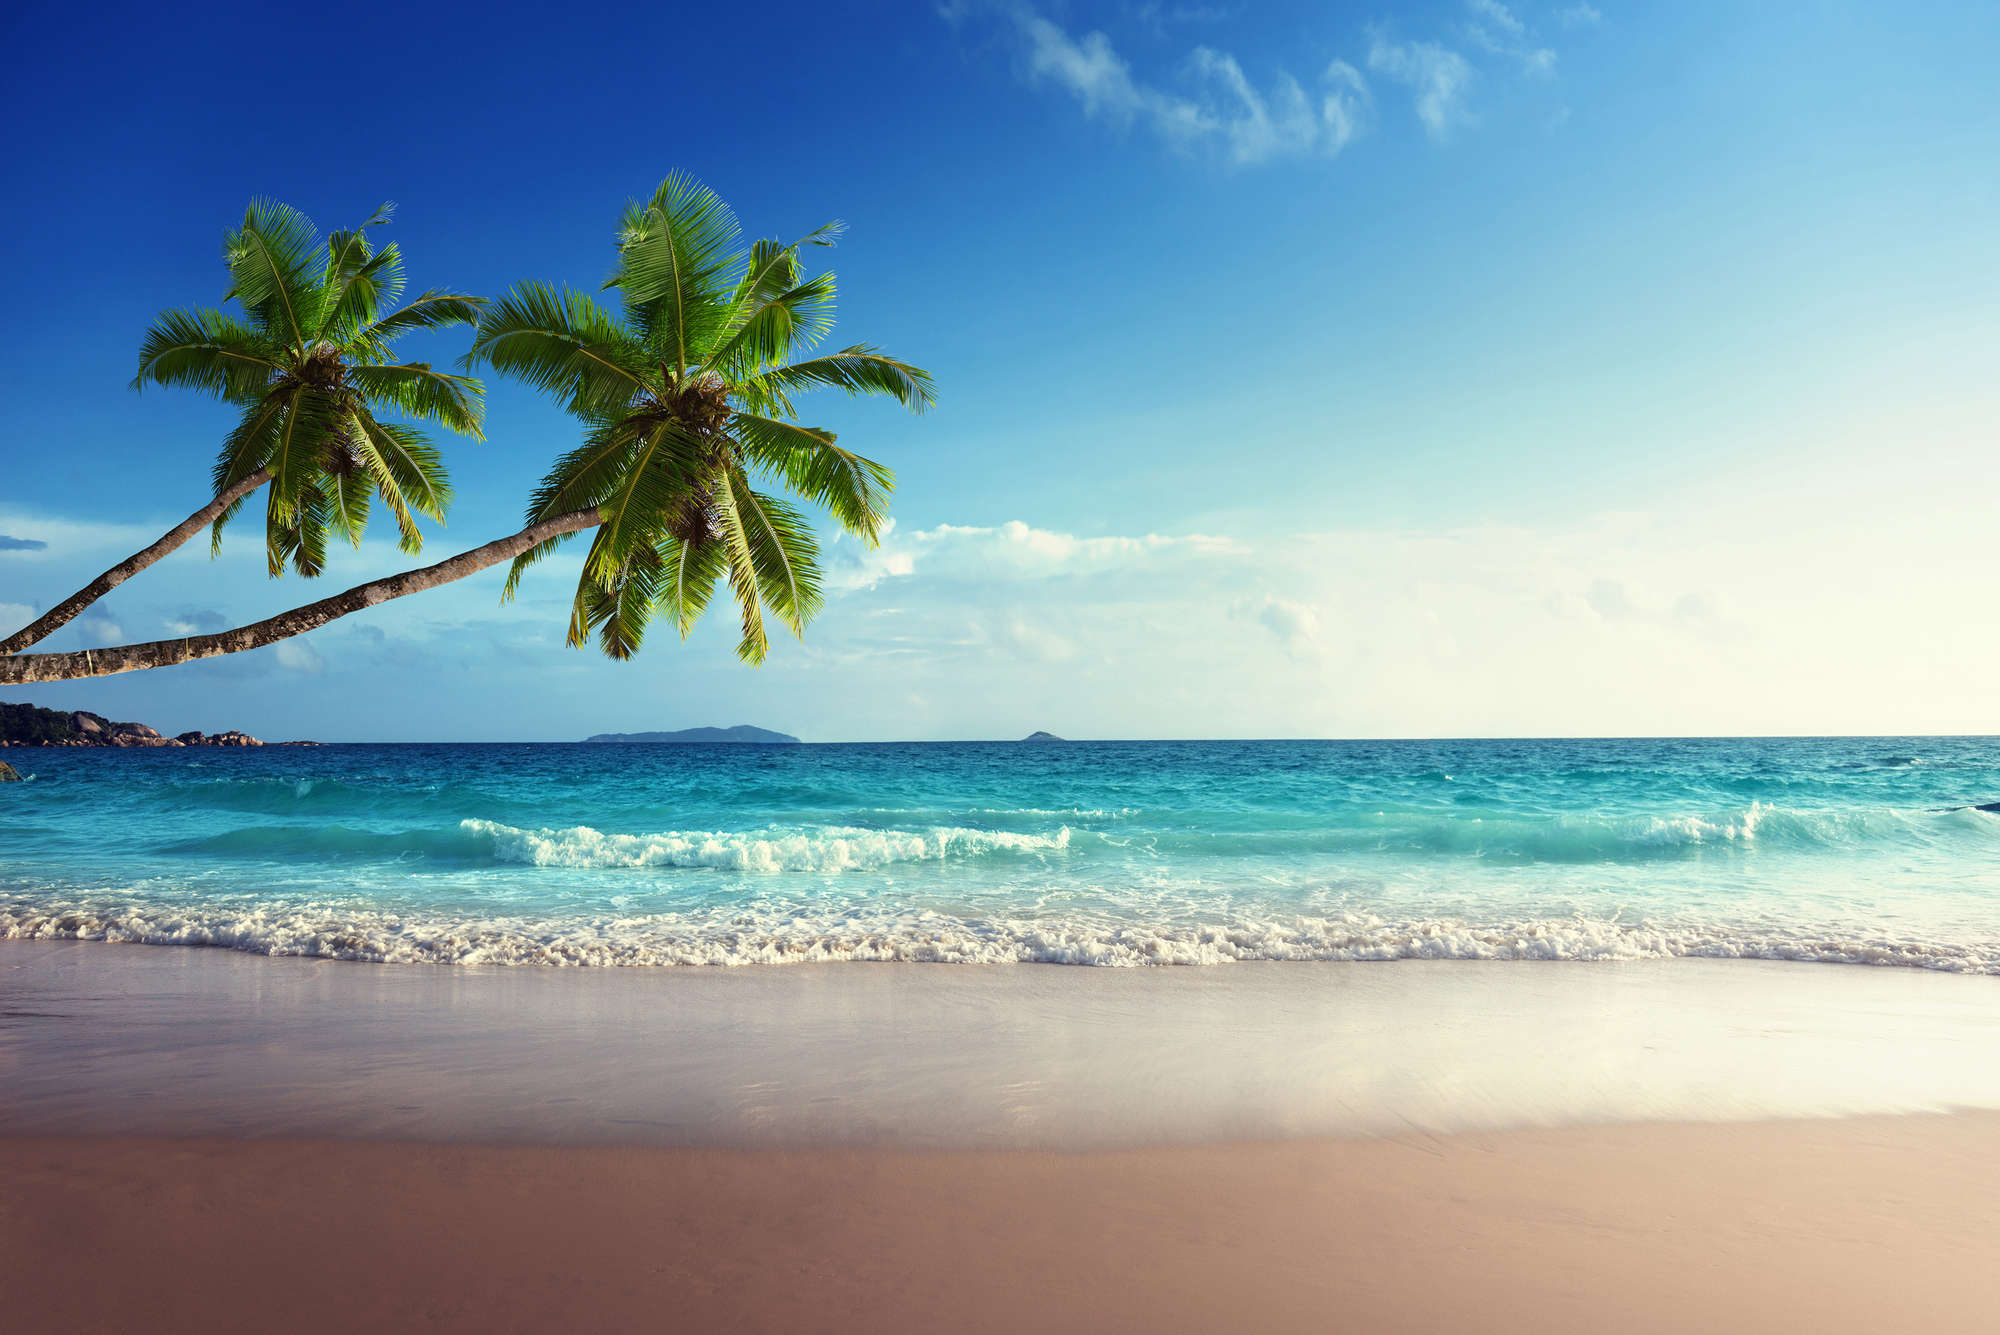             Papel pintado Playa Dos palmeras en la costa sobre tejido no tejido liso mate
        